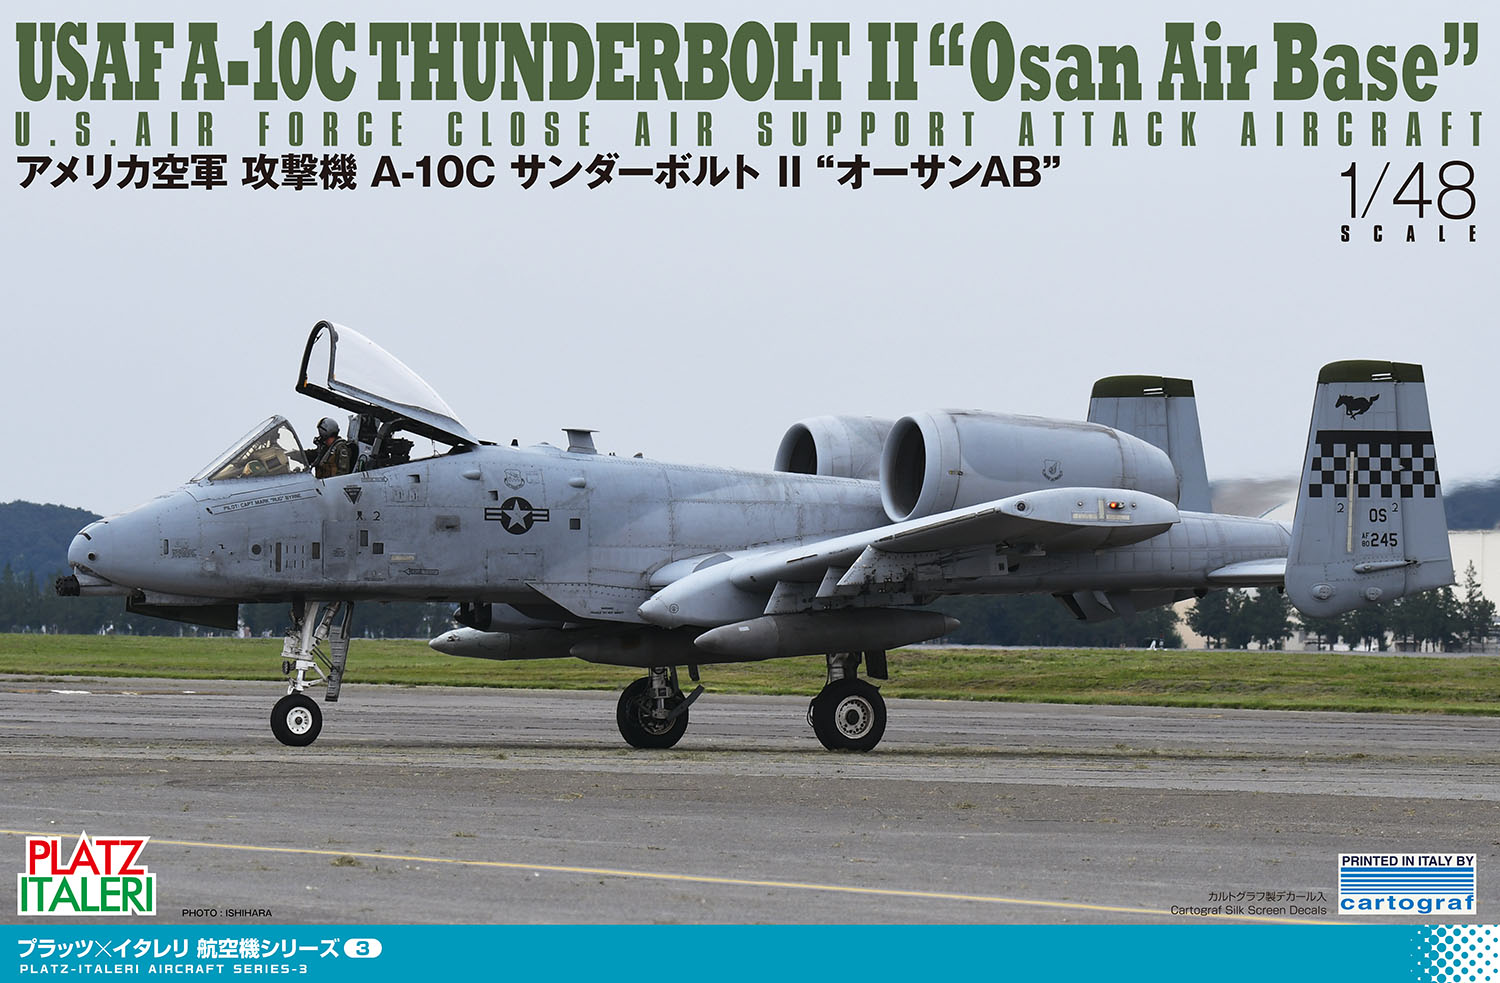 1/48 アメリカ空軍 攻撃機 A-10C サンダーボルトII オーサン AFB【TPA